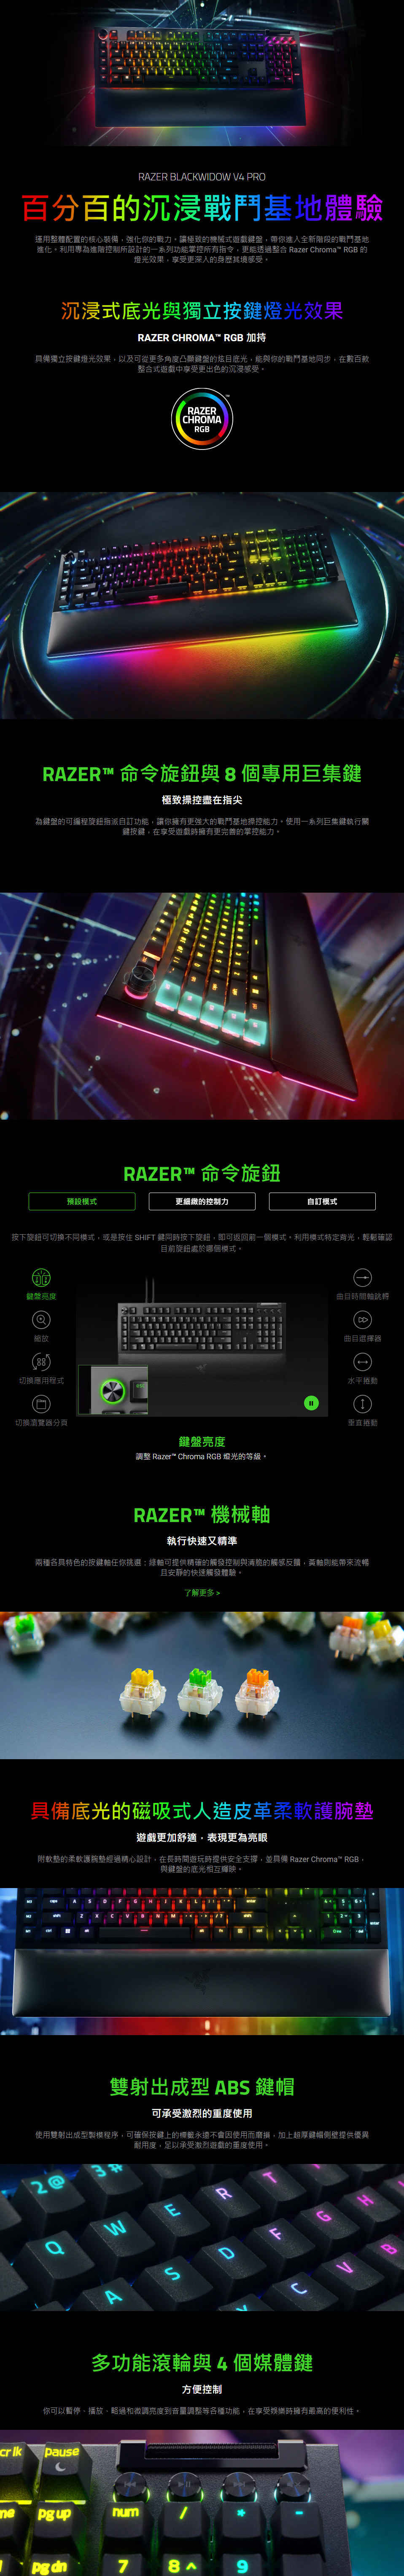 RAZER BLACKWIDOW V4 PRO 百分百的沉浸戰鬥基地體驗 運用整體配置的核心裝備，強化你的戰力。讓極致的機械式遊戲鍵盤，帶你進入全新階段的戰鬥基地進化。利用專為進階控制所設計的一系列功能掌控所有指令，更能透過整合 Razer Chroma™ RGB 的燈光效果，享受更深入的身歷其境感受。   在任何一間 RAZERSTORE 親身體驗 >  This is a carousel. Use Next and Previous buttons to navigate, or jump to a slide using the slide dots.                     沉浸式底光與獨立按鍵燈光效果 RAZER CHROMA™ RGB 加持 具備獨立按鍵燈光效果，以及可從更多角度凸顯鍵盤的炫目底光，能與你的戰鬥基地同步，在數百款整合式遊戲中享受更出色的沉浸感受。   RAZER™ 命令旋鈕與 8 個專用巨集鍵 極致操控盡在指尖 為鍵盤的可編程旋鈕指派自訂功能，讓你擁有更強大的戰鬥基地操控能力。使用一系列巨集鍵執行關鍵按鍵，在享受遊戲時擁有更完善的掌控能力。  RAZER™ 命令旋鈕    按下旋鈕可切換不同模式，或是按住 SHIFT 鍵同時按下旋鈕，即可返回前一個模式。利用模式特定背光，輕鬆確認目前旋鈕處於哪個模式。    鍵盤亮度   縮放   切換應用程式   切換瀏覽器分頁   曲目時間軸跳轉   曲目選擇器   水平捲動   垂直捲動   鍵盤亮度 調整 Razer™ Chroma RGB 燈光的等級。 RAZER™ 機械軸 執行快速又精準 兩種各具特色的按鍵軸任你挑選：綠軸可提供精確的觸發控制與清脆的觸感反饋，黃軸則能帶來流暢且安靜的快速觸發體驗。  了解更多 > RAZER™ MECHANICAL SWITCHES 具備底光的磁吸式人造皮革柔軟護腕墊 遊戲更加舒適，表現更為亮眼 附軟墊的柔軟護腕墊經過精心設計，在長時間遊玩時提供安全支撐，並具備 Razer Chroma™ RGB，與鍵盤的底光相互輝映。  具備底光的磁吸式人造皮革柔軟護腕墊 雙射出成型 ABS 鍵帽 可承受激烈的重度使用 使用雙射出成型製模程序，可確保按鍵上的標籤永遠不會因使用而磨損，加上超厚鍵帽側壁提供優異耐用度，足以承受激烈遊戲的重度使用。  雙射出成型 ABS 鍵帽 多功能滾輪與 4 個媒體鍵 方便控制 你可以暫停、播放、略過和微調亮度到音量調整等各種功能，在享受娛樂時擁有最高的便利性。